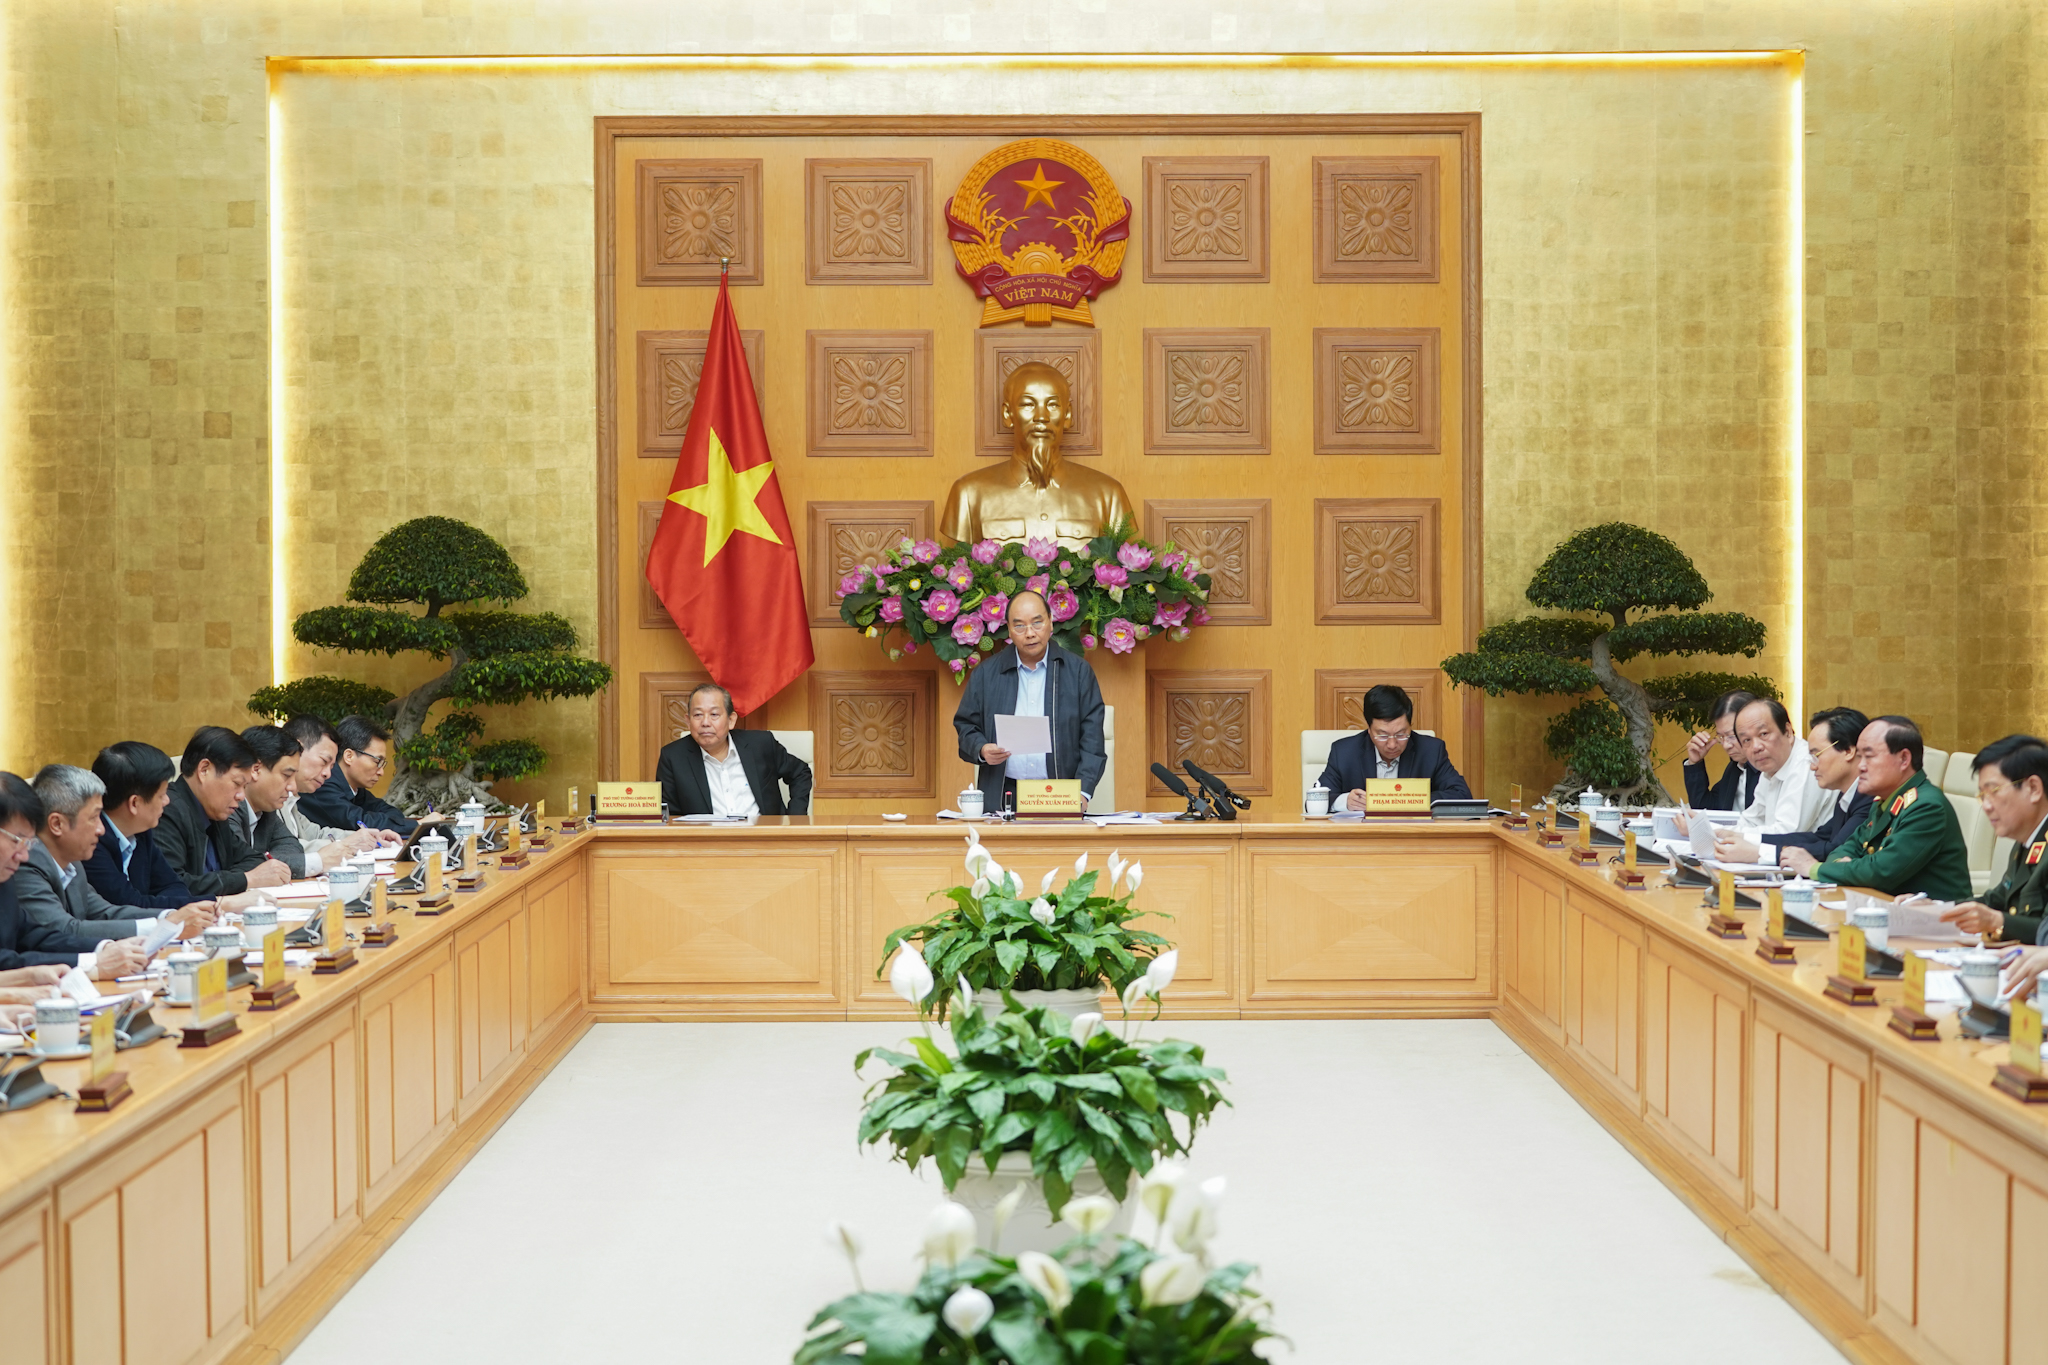 Thủ tướng Nguyễn Xuân Phúc chủ trì cuộc họp chiều 24/2.&nbsp;(Ảnh: VGP).&nbsp;